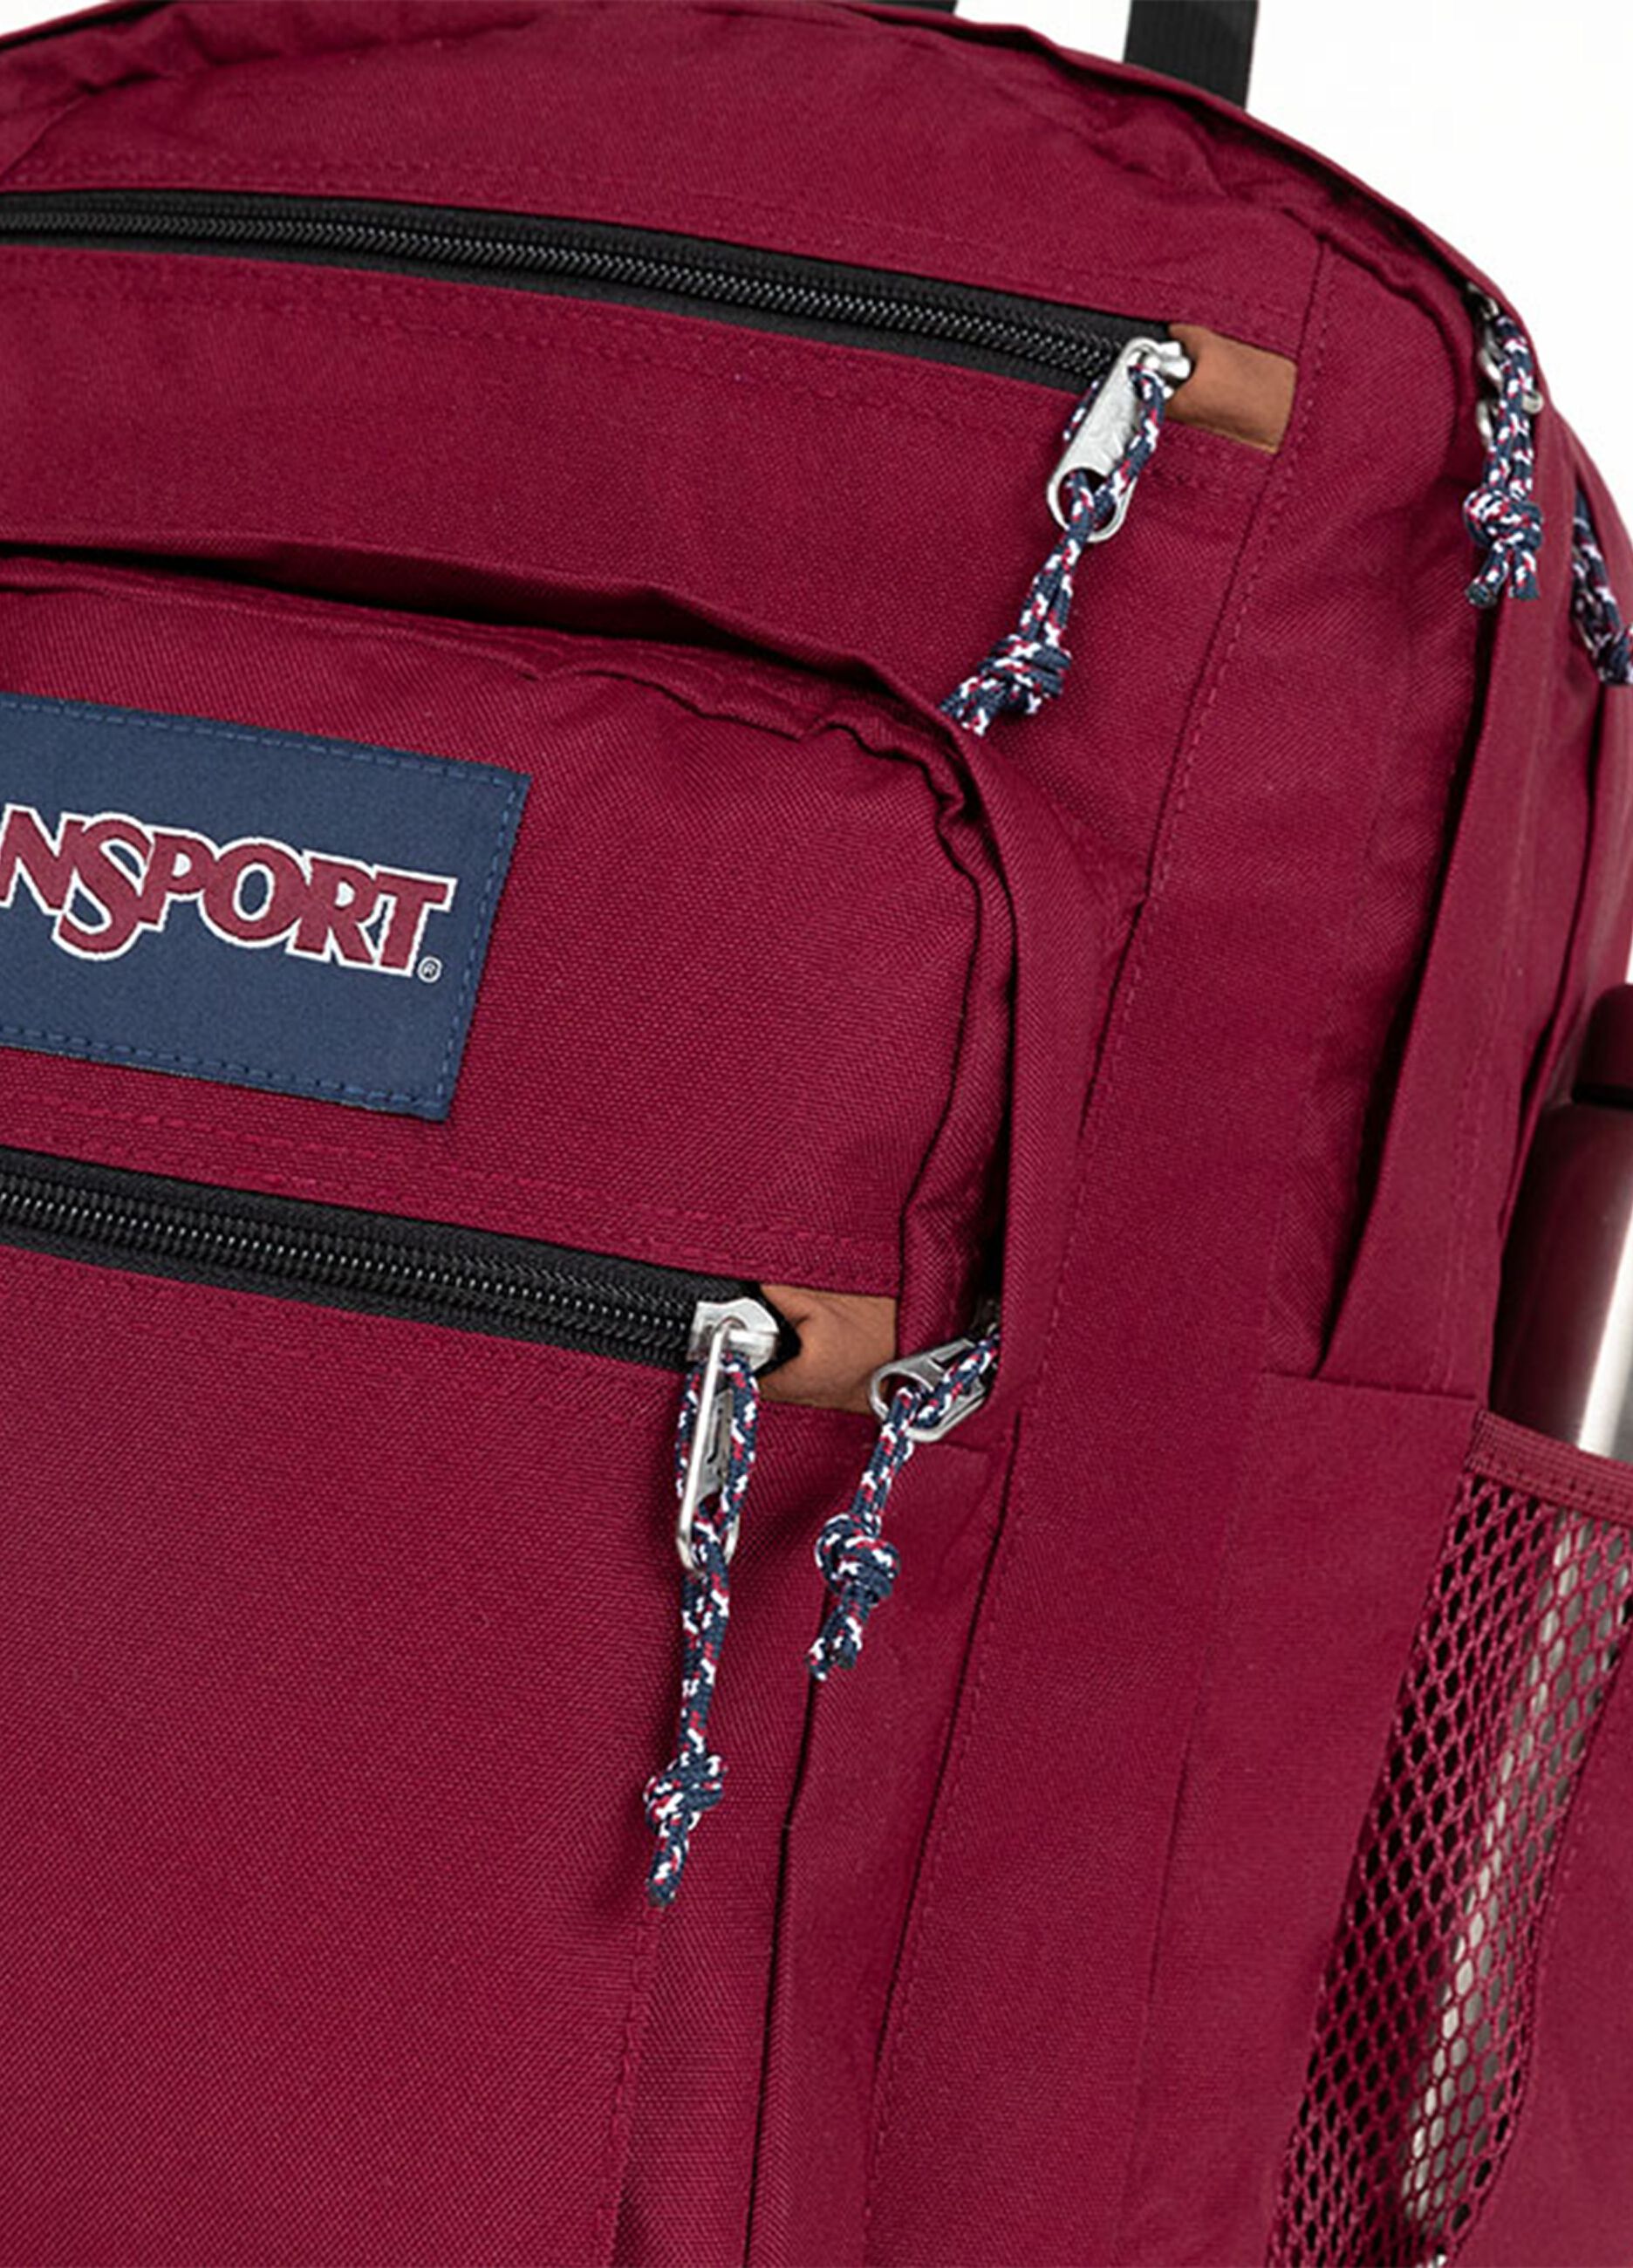 Jansport Cool Student backpack